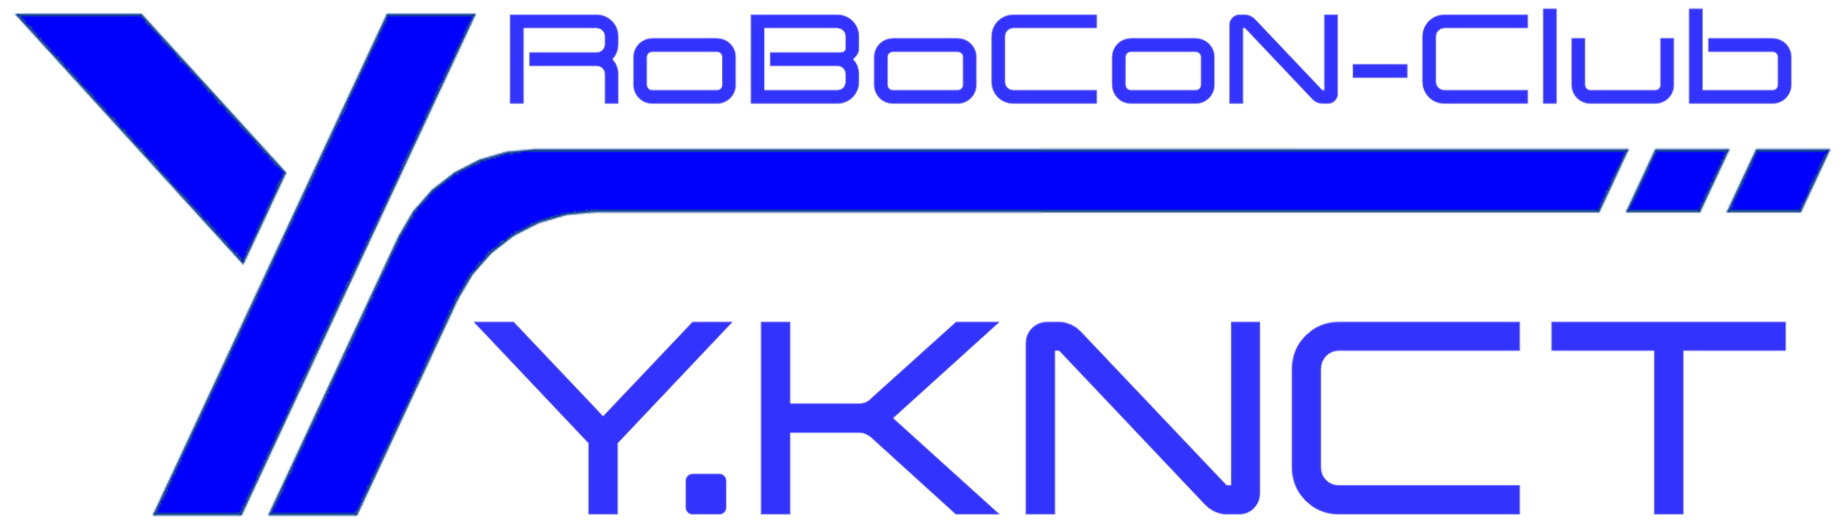 Y.KNCT RoBoCoN-Club